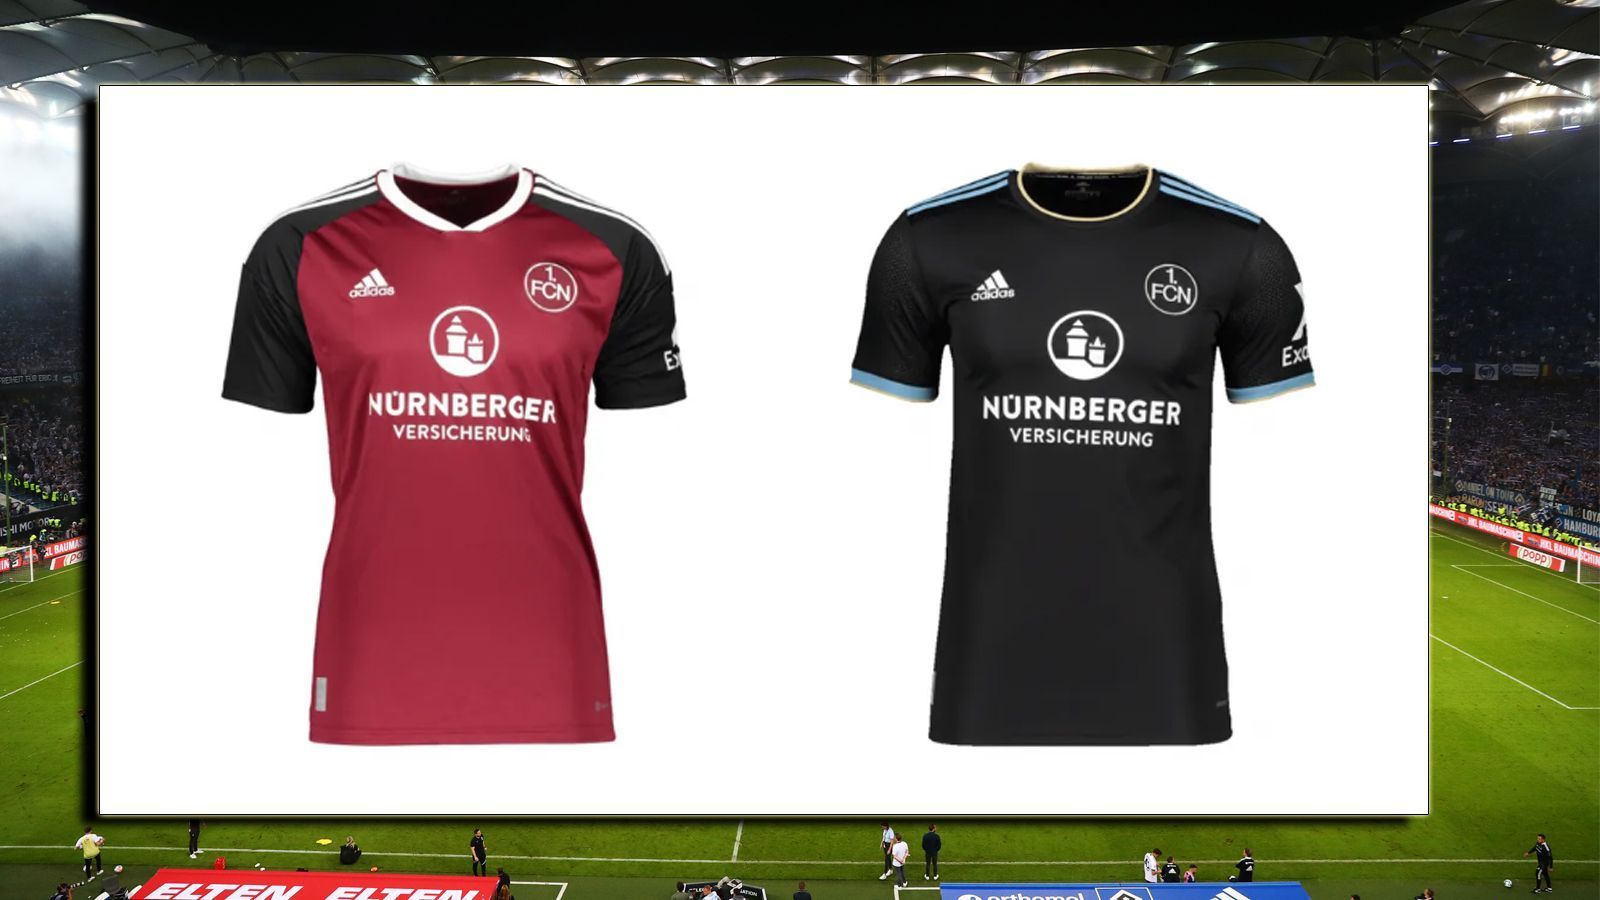 
                <strong>Platz 7: 1. FC Nürnberg</strong><br>
                Wir hätten uns beim Auswärtstrikot noch mehr Variation als nur Schwarz gewünscht, zumal die Farbe auch beim Heimtrikot präsent ist. Aber das Heimtrikot ist klassisch und hat Stil.
              